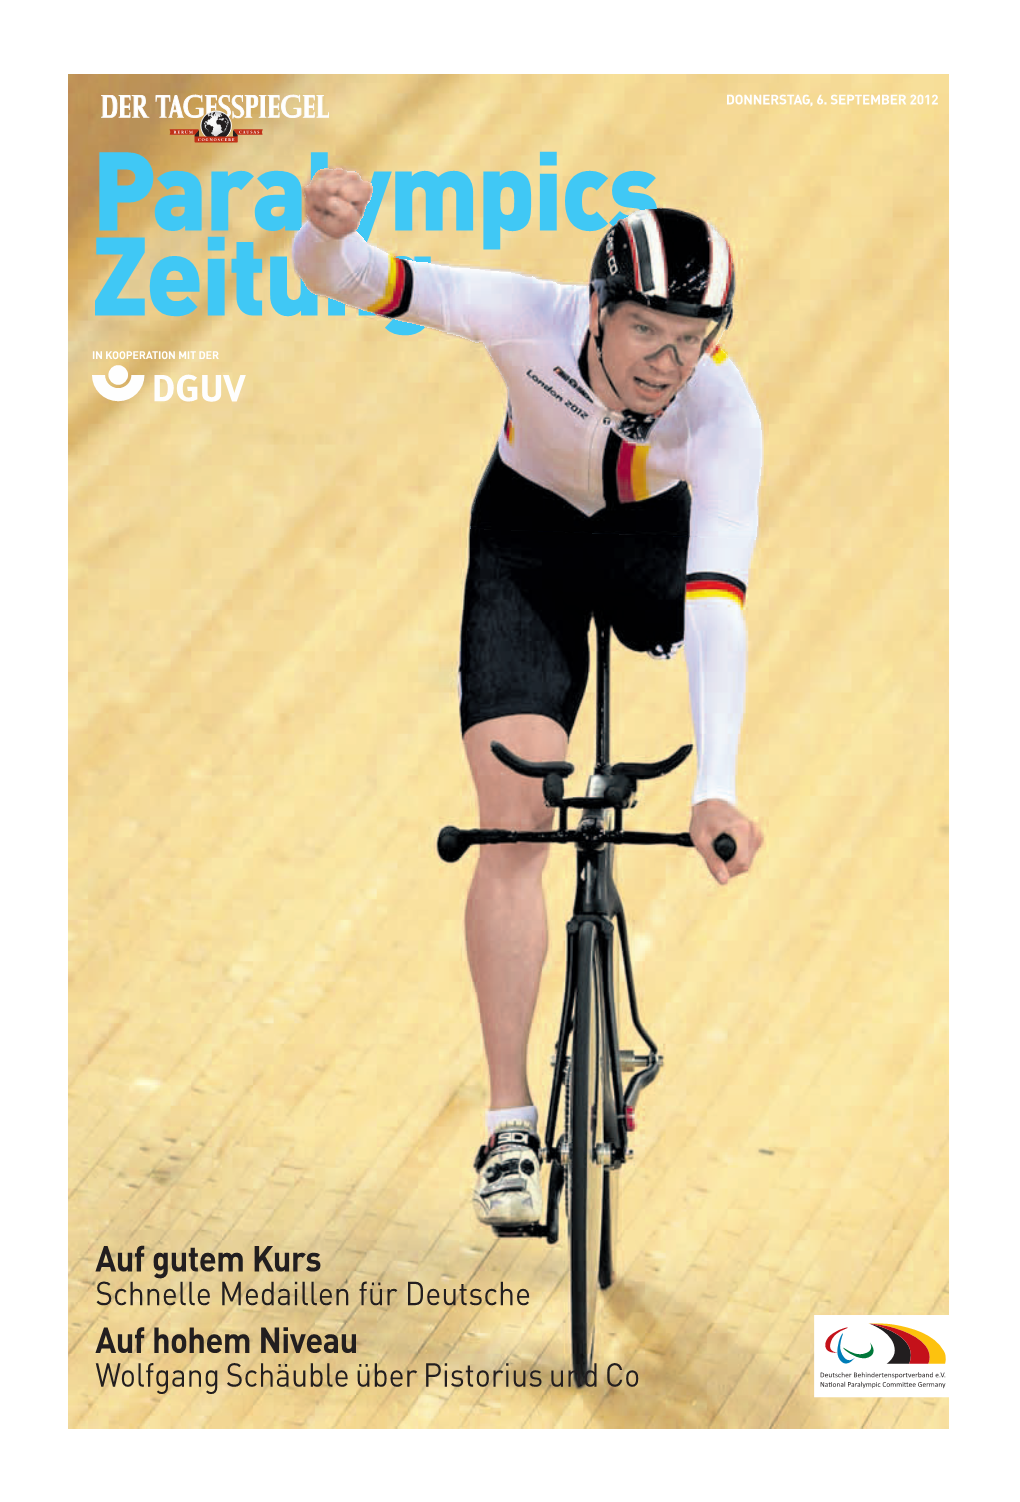 6 September 2012: Paralympics Zeitung London